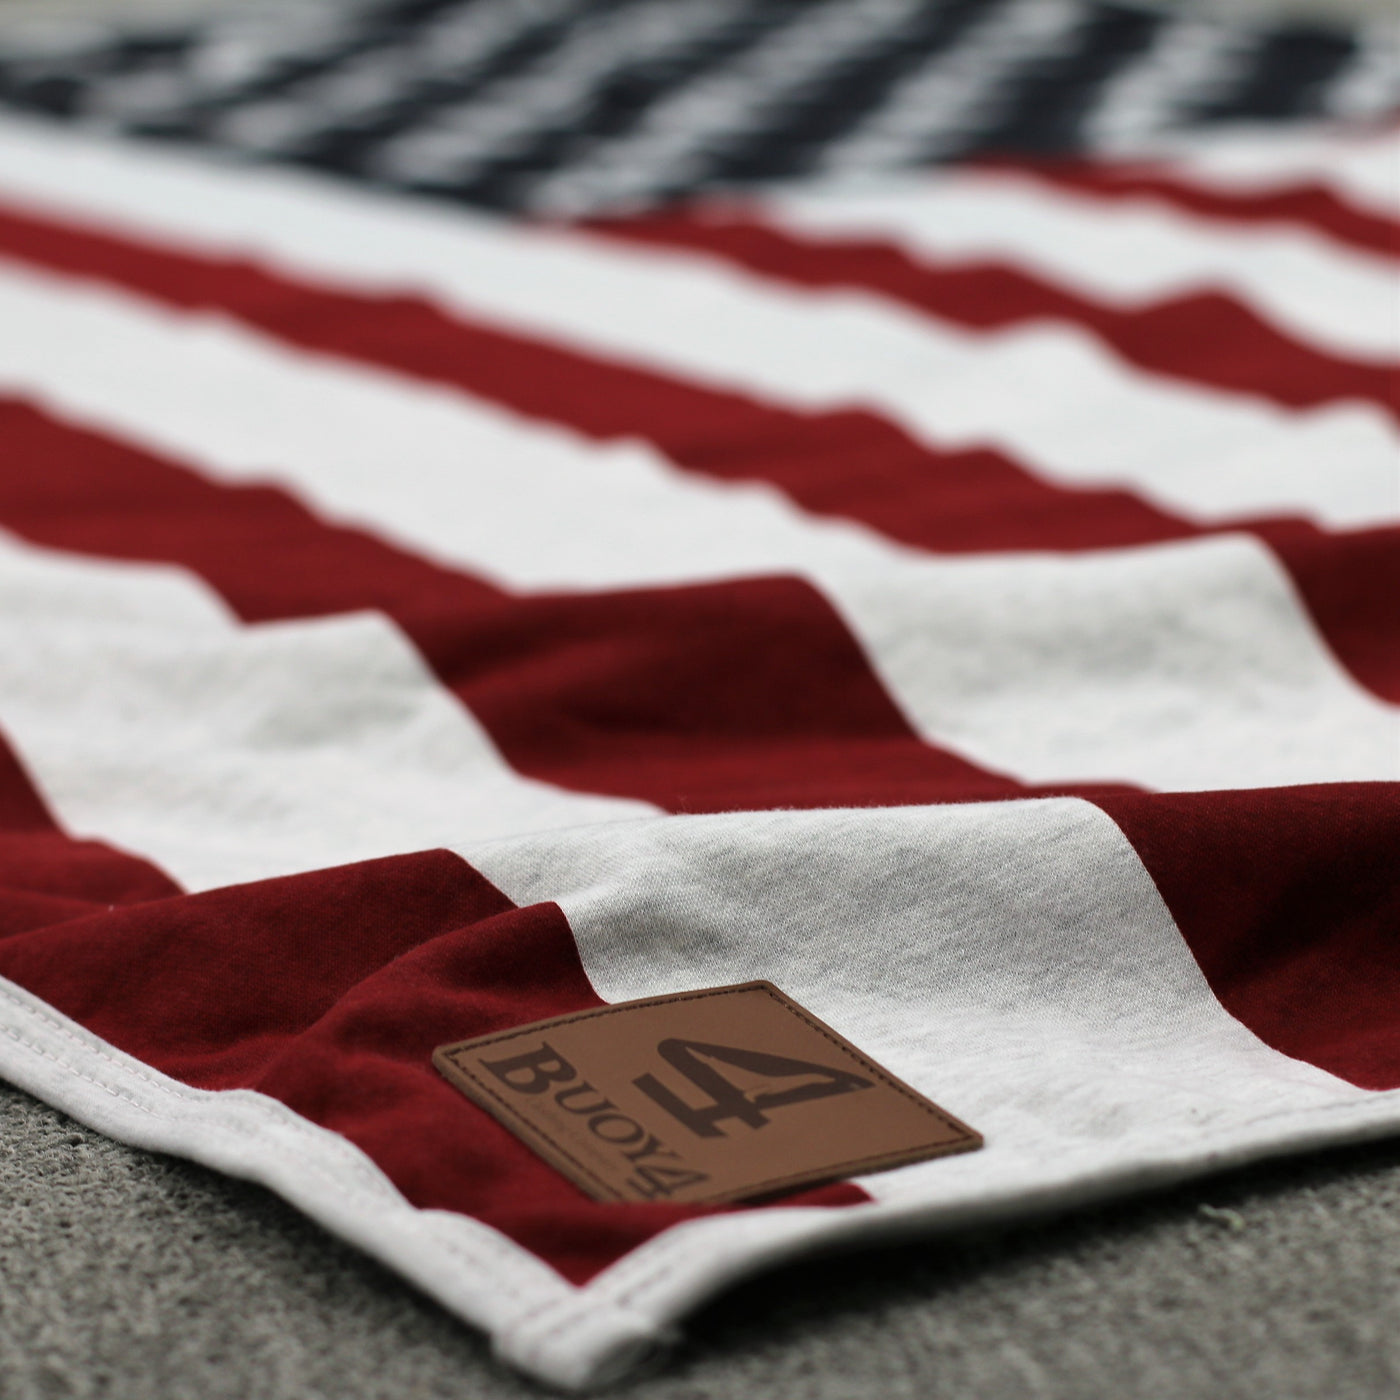 USA Flag - Oversized Sweatshirt Blanket